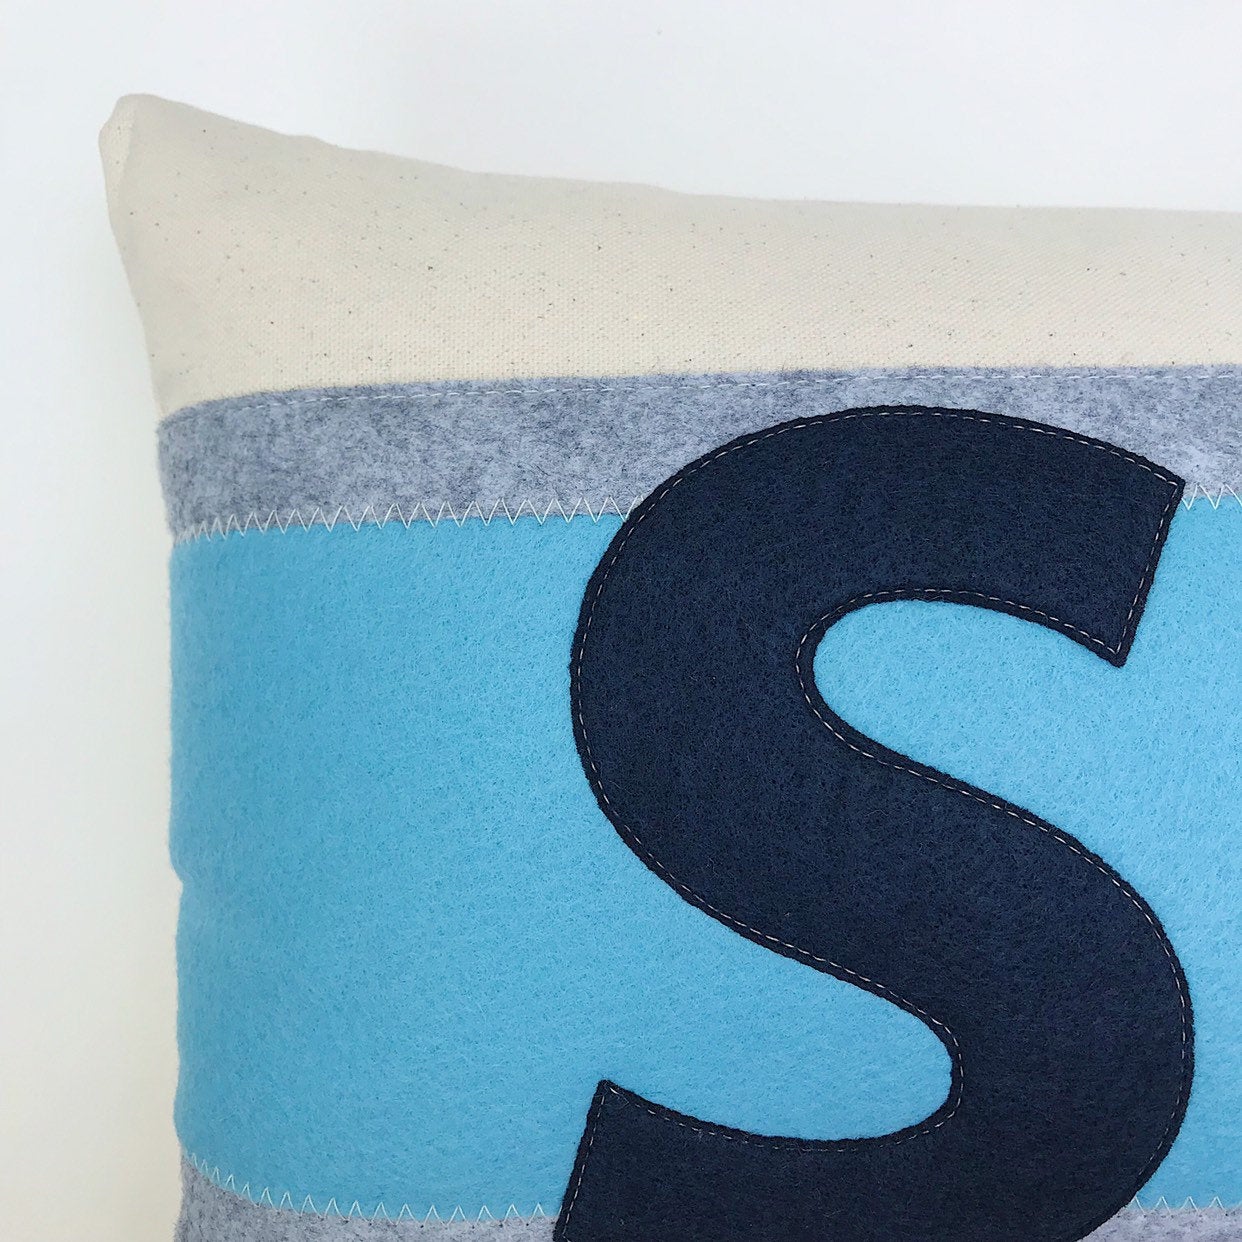 14x21" SKI Stripe pillow - Navy + Sky + Grey